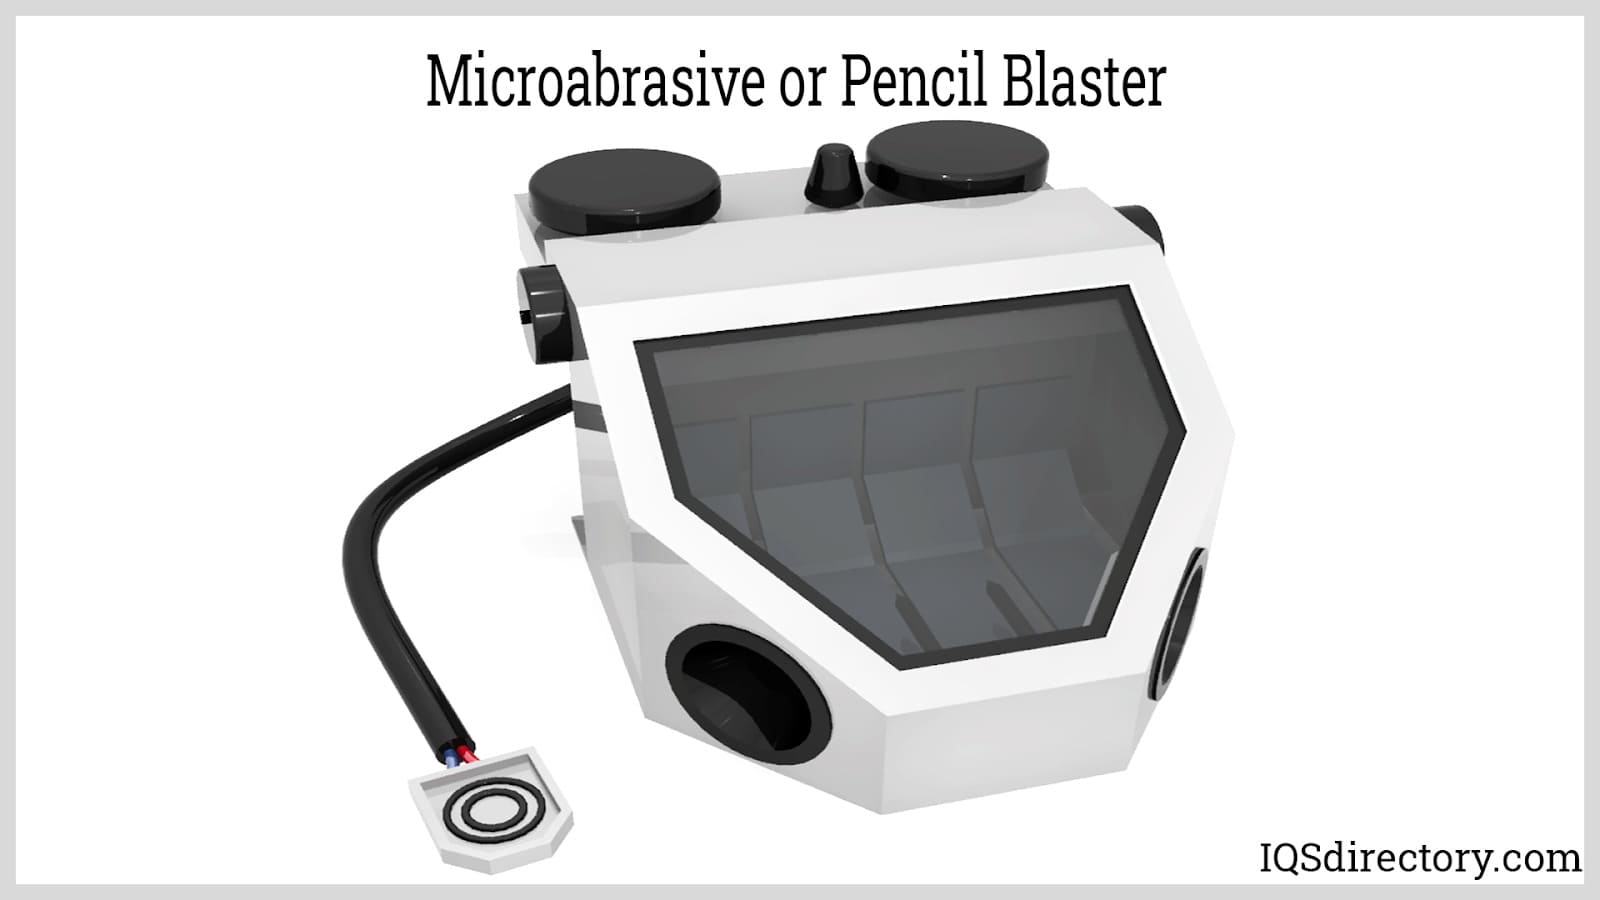 Microabrasive or Pencil Blaster